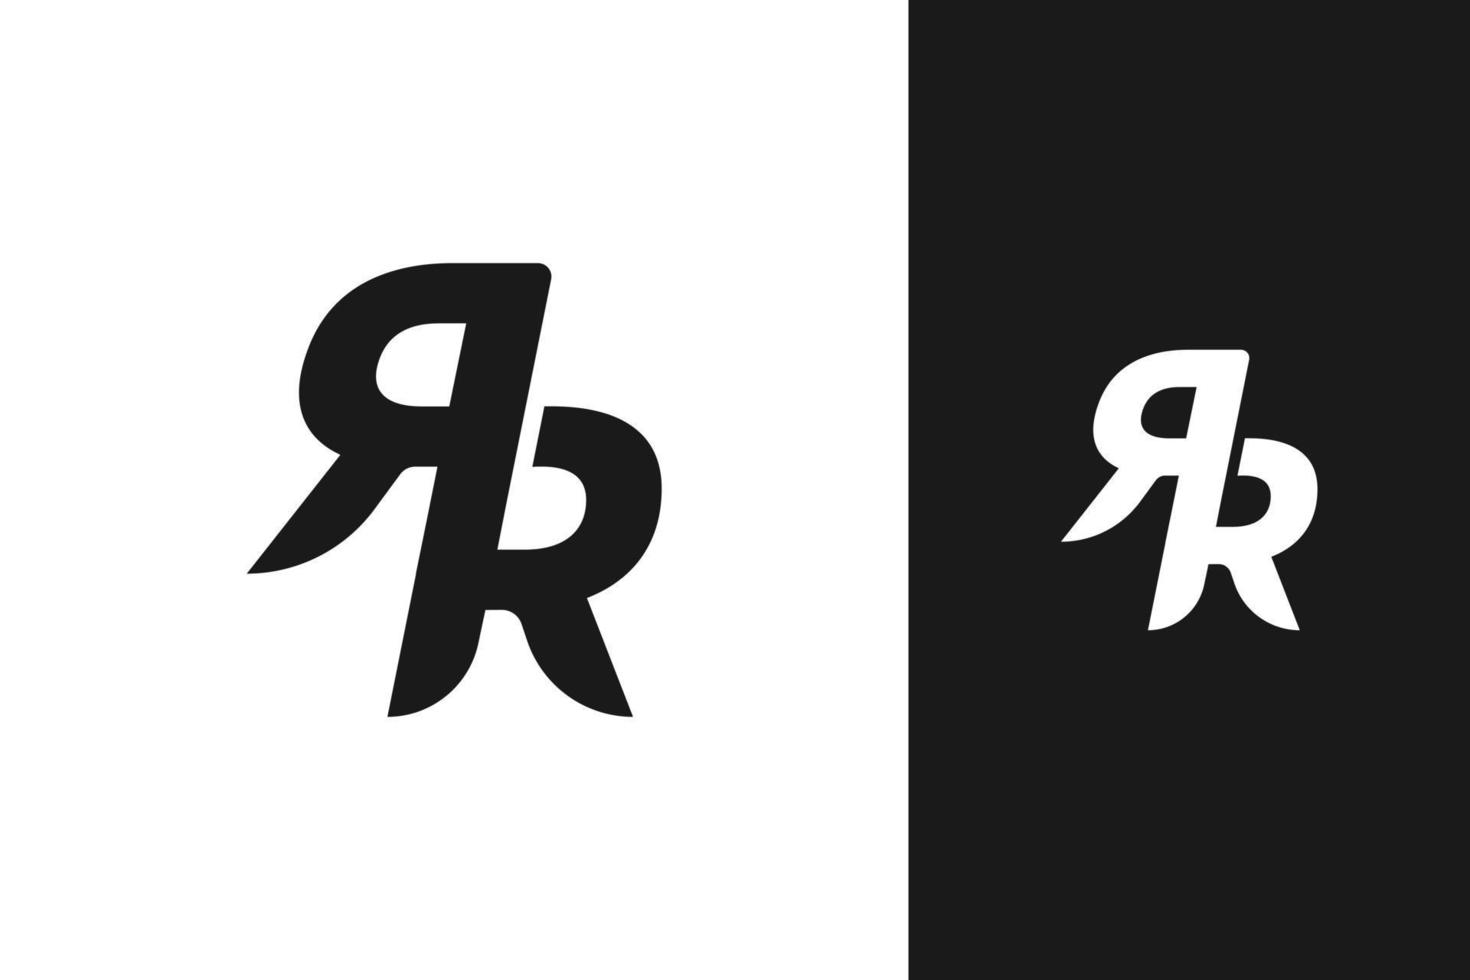 vecteur de conception de logo monogramme simple rr